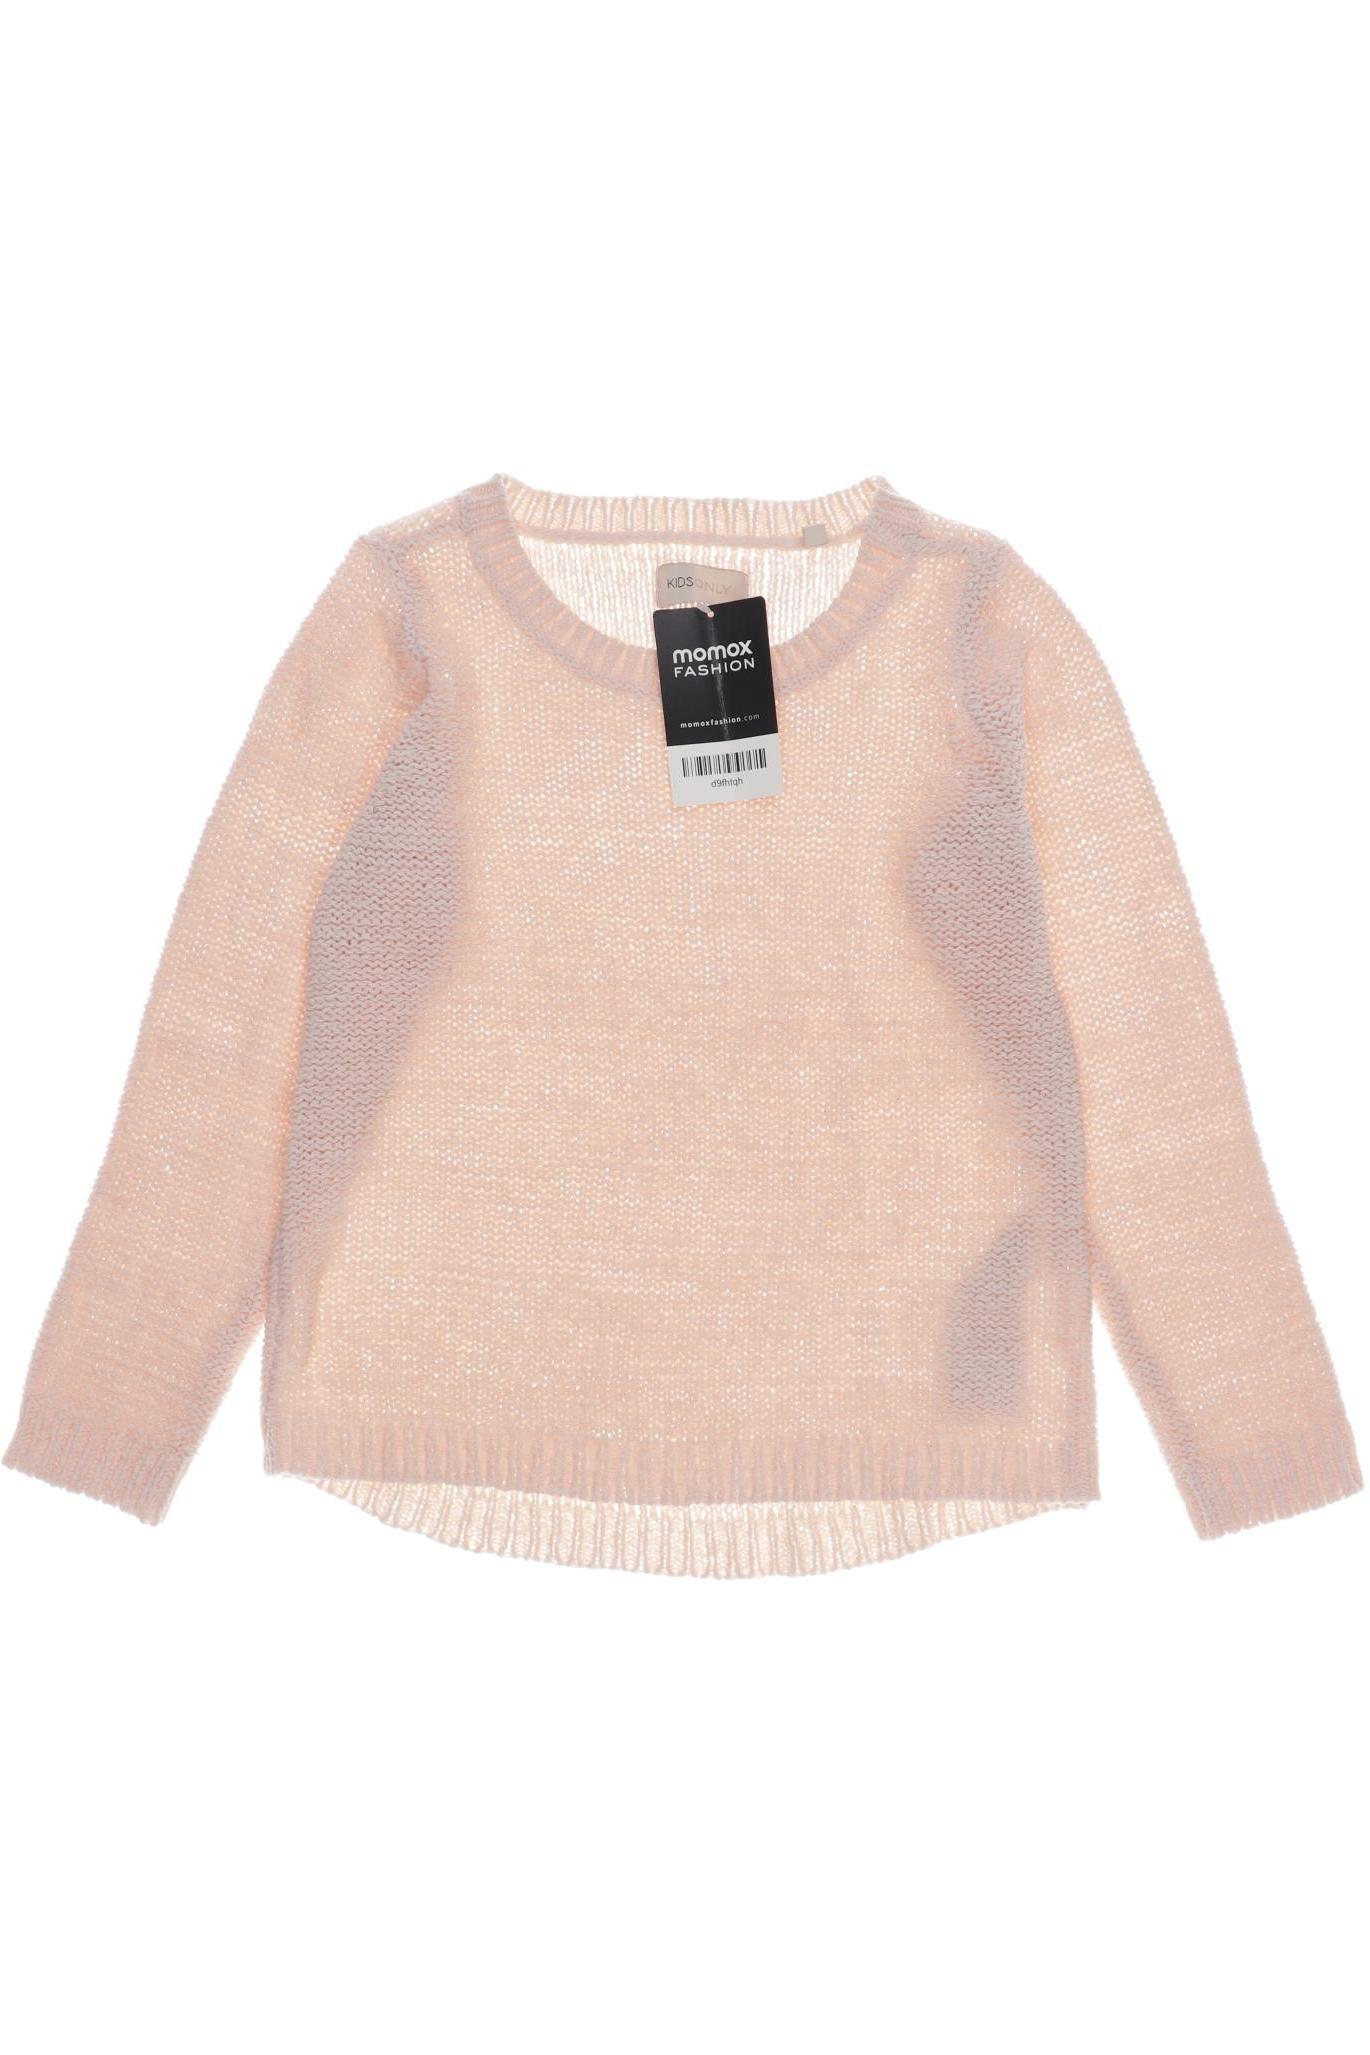 Only Damen Pullover, pink, Gr. 122 von Only